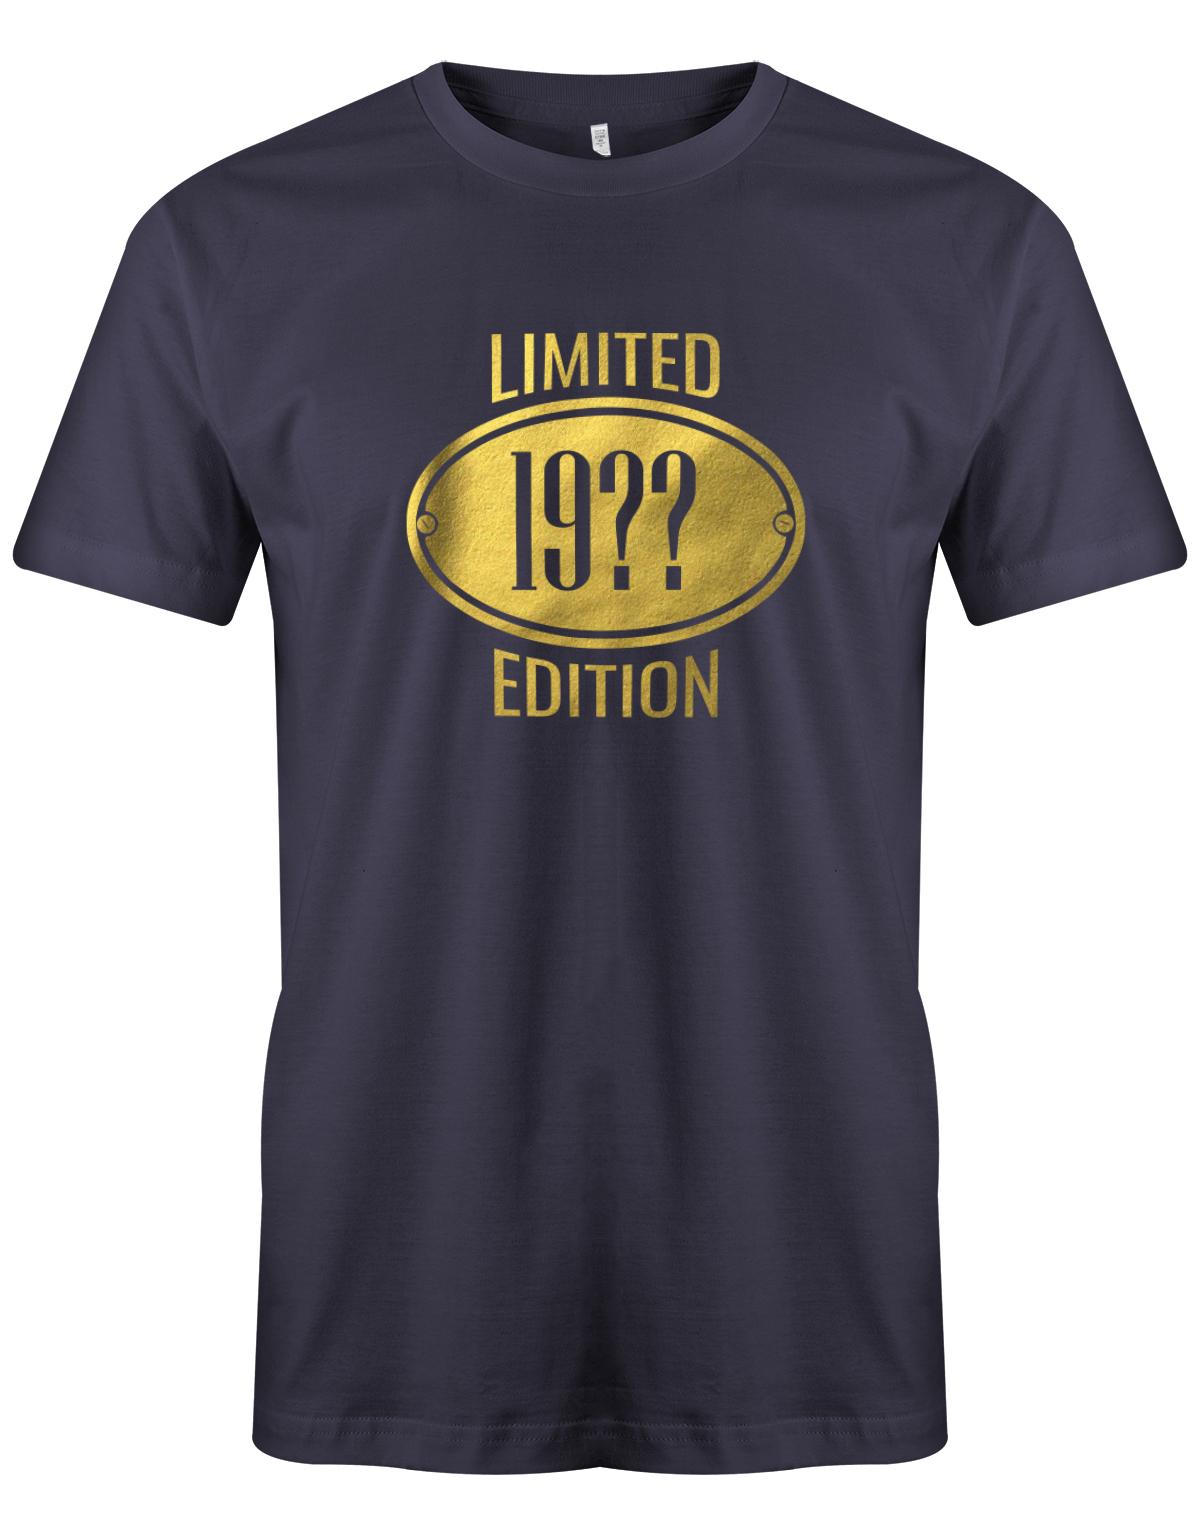 Limited-Edition-Gold-Schild-Herren-geburtstag-Shirt-Navy